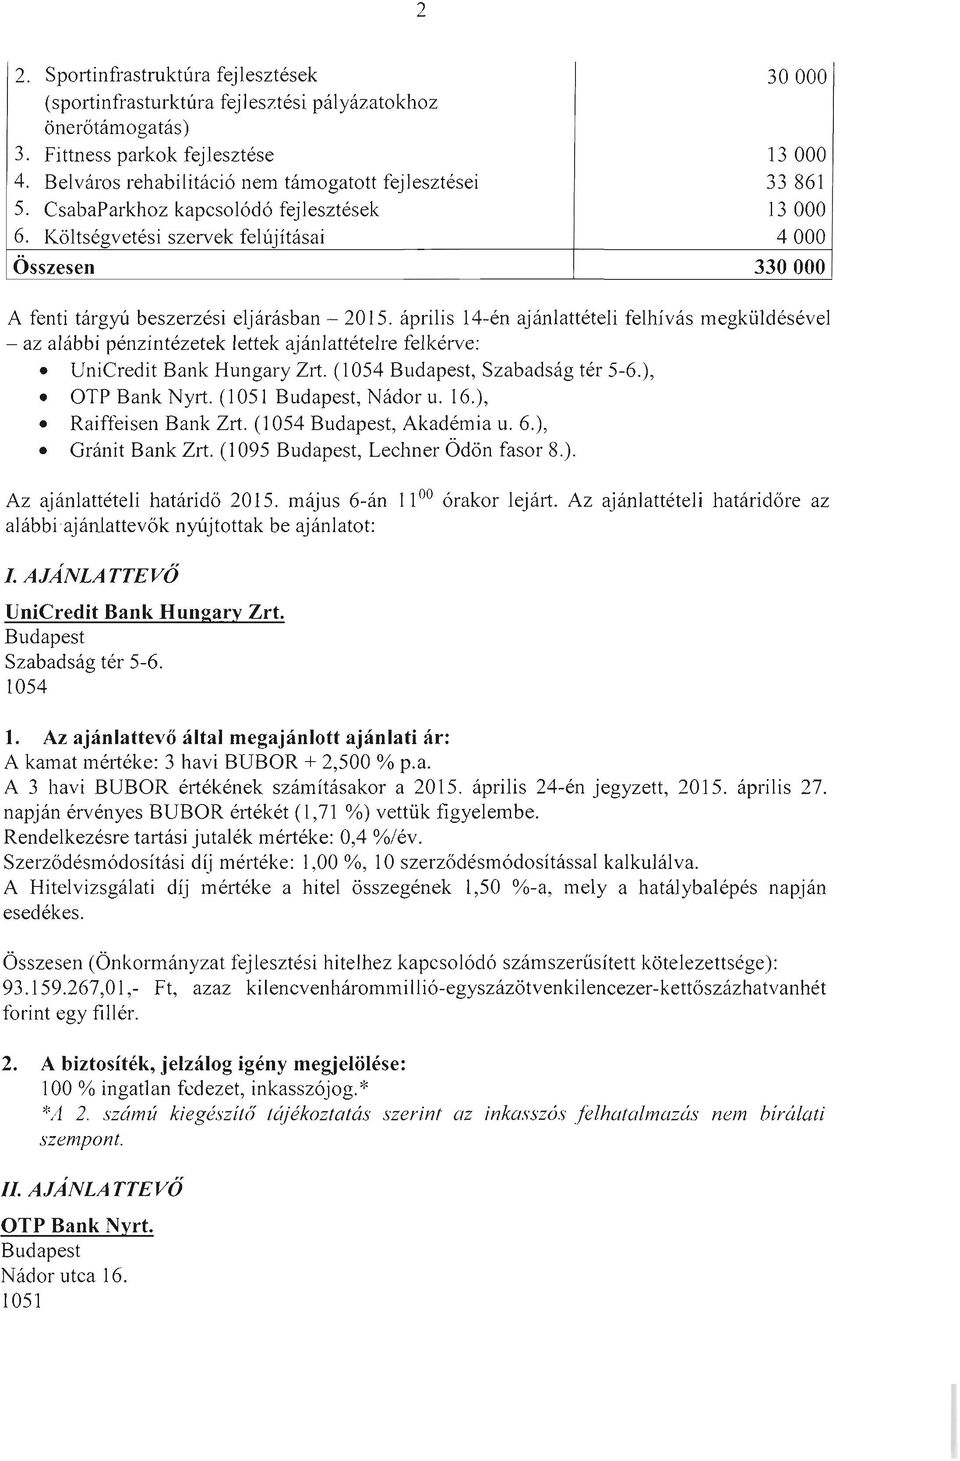 április 14-én ajánlattételi felhívás megküldésével - az alábbi pénzintézetek lettek ajánlattételre felkérve: UniCredit Bank Hungary Zrt. (, Szabadság tér 5-6.), OTP Bank Nyrt. (1051, Nádor u. 16.